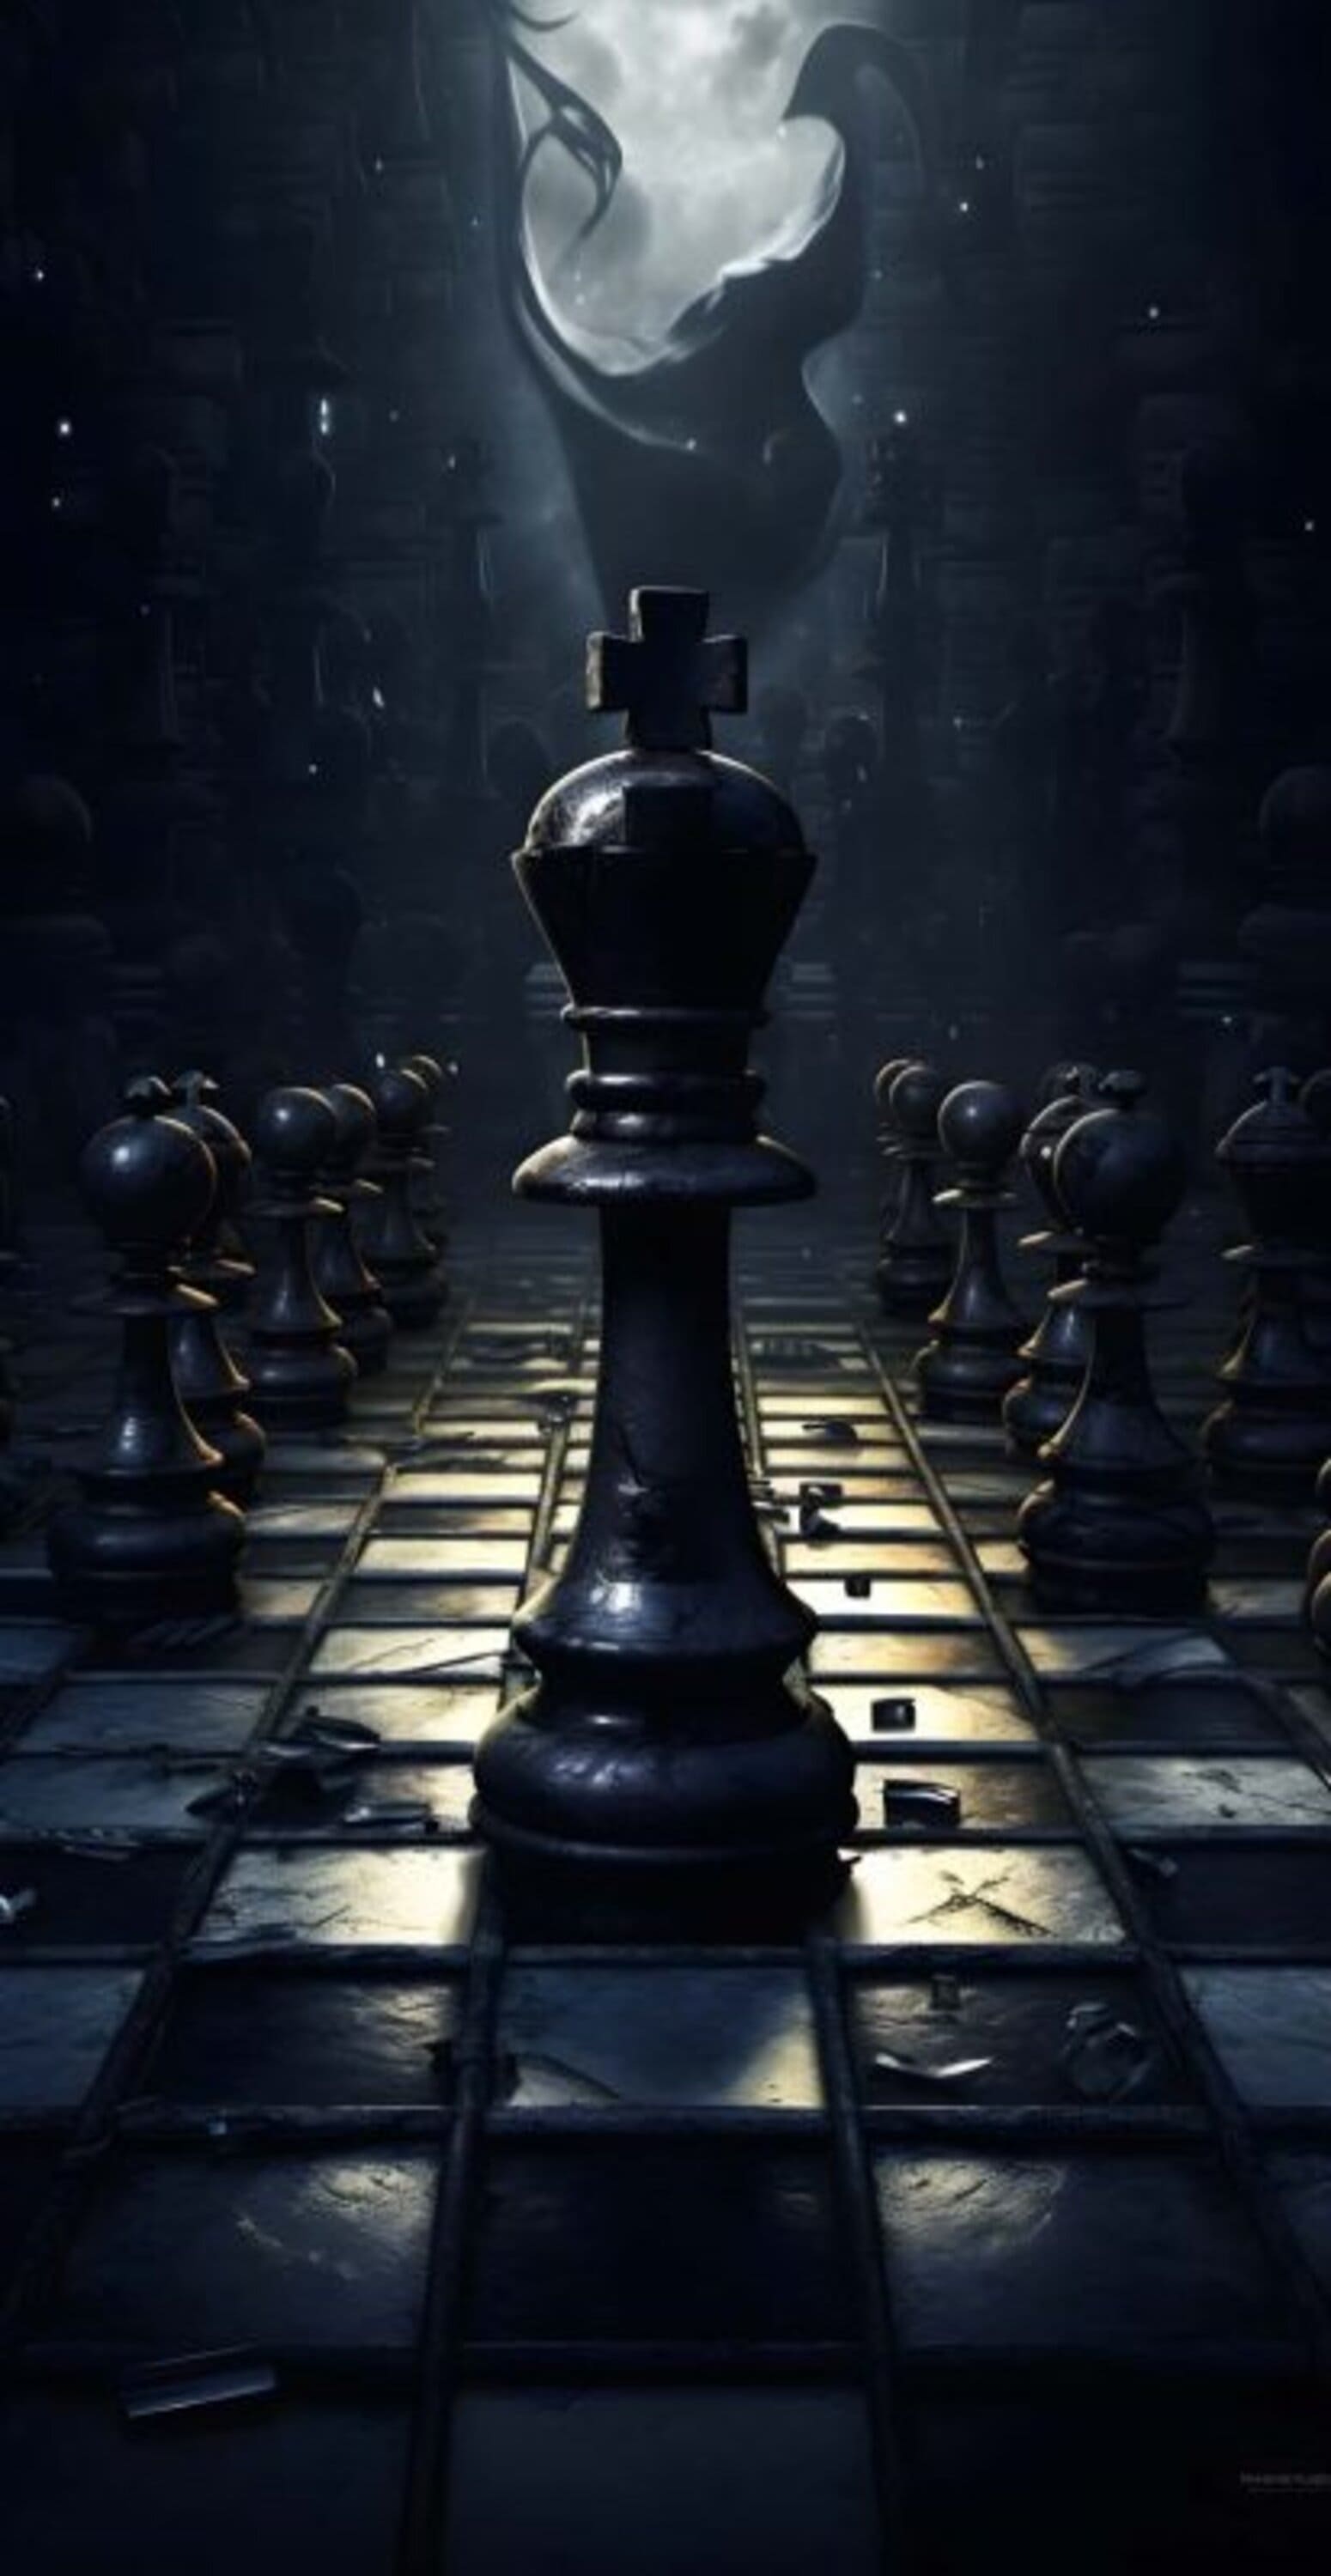 خلفية ملك لعبة الشطرنج بجودة 4K، افخم خلفيات للشطرنج